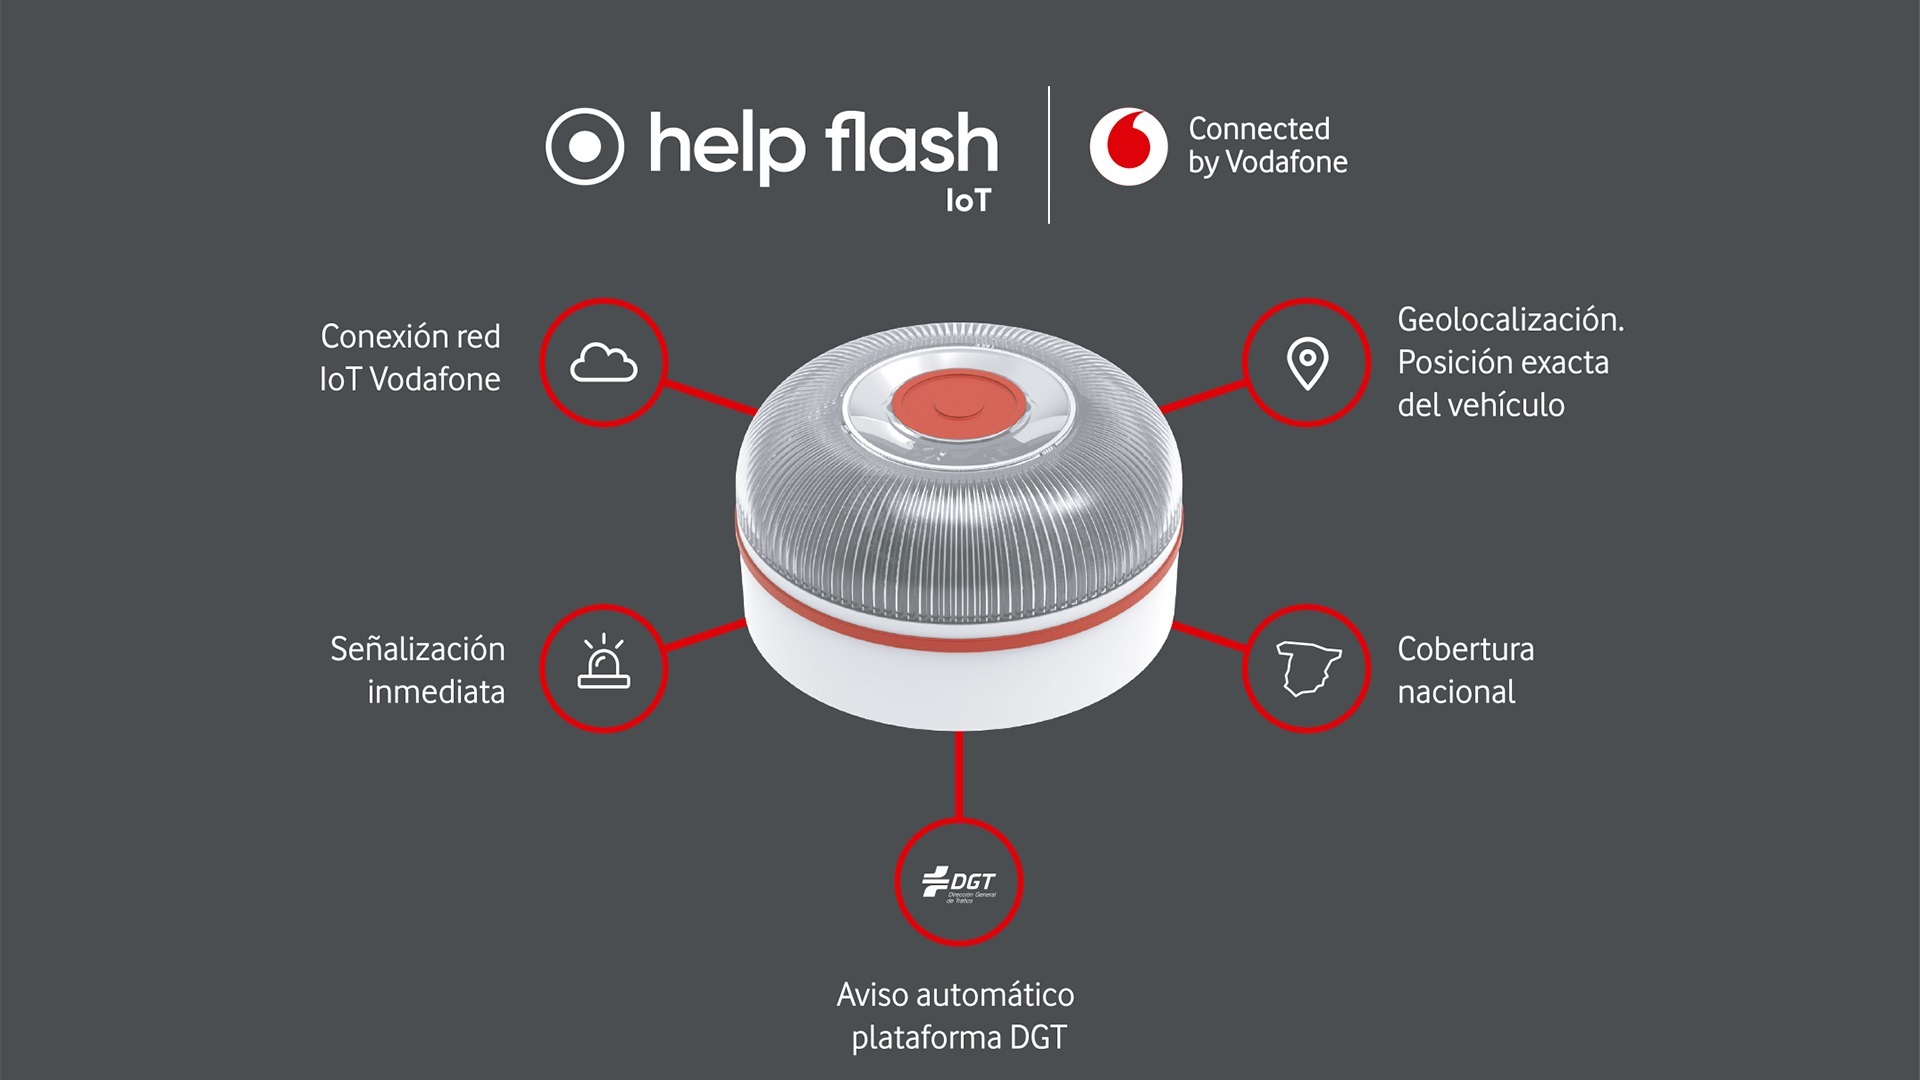 Vodafone y Netun Solutions lanzarán luces de emergencia que alertarán a DGT